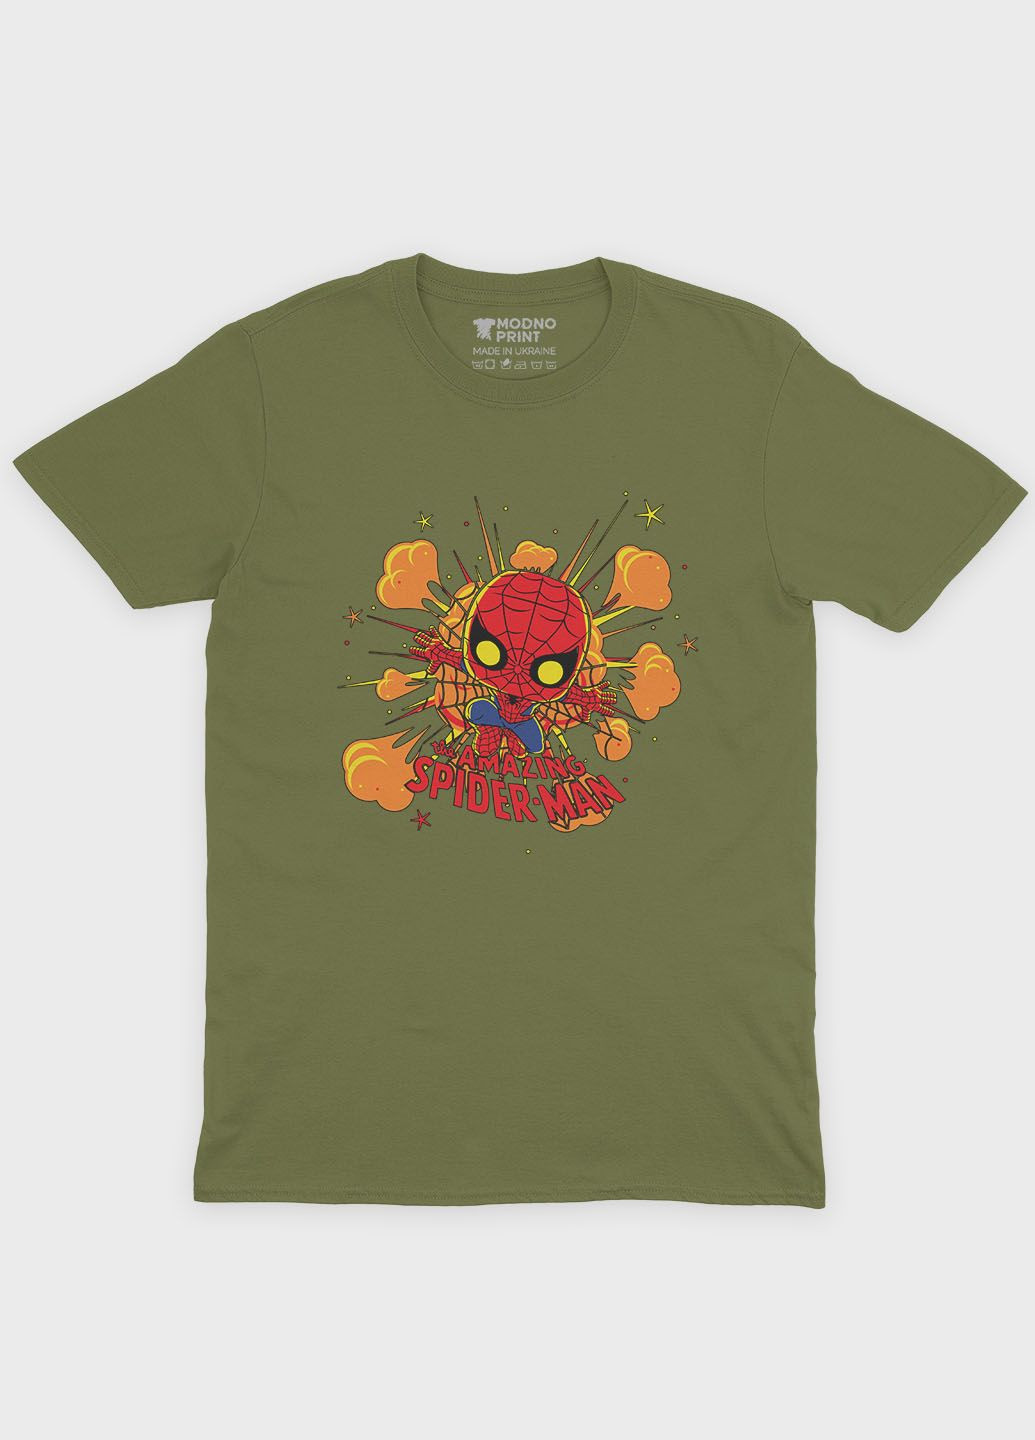 Хаки (оливковая) мужская футболка odno с принтом супергероя - человек-паук m (ts001-1-hgr-006-014-056) Modno